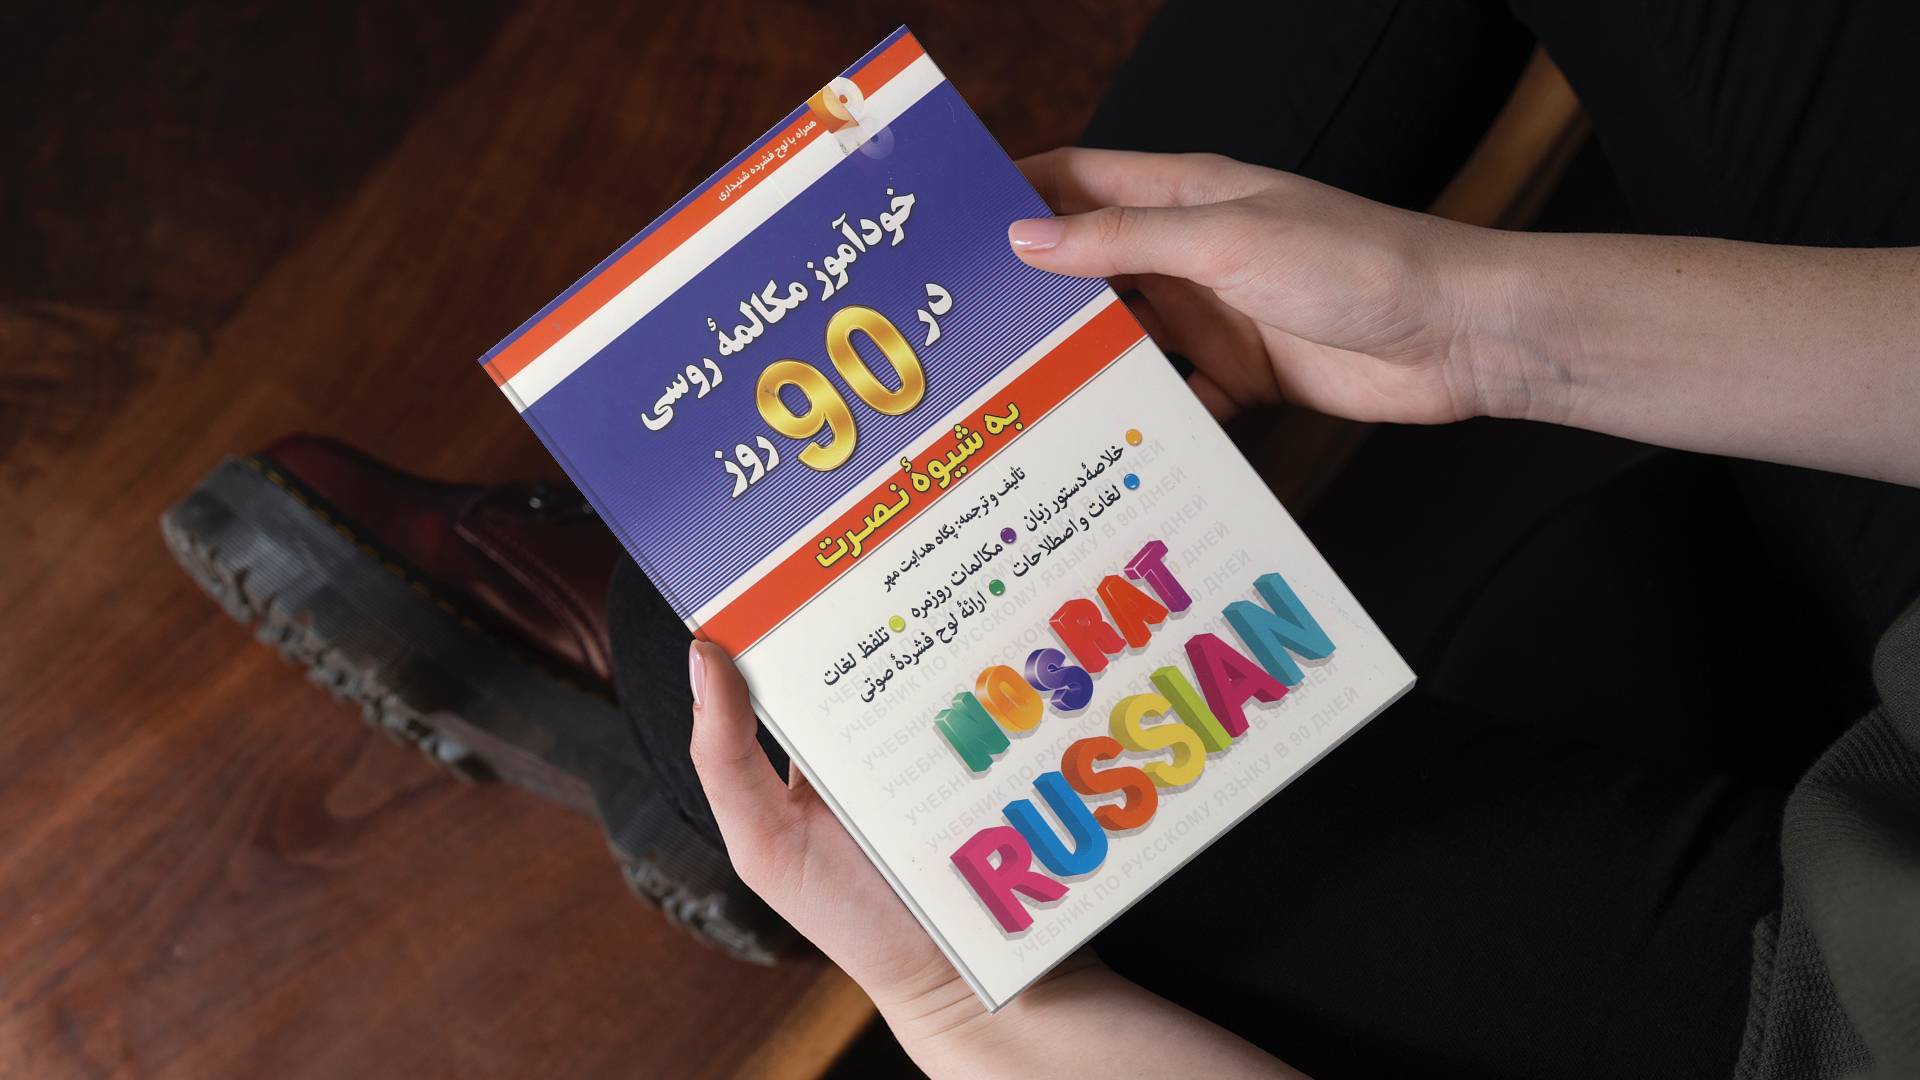 خرید کتاب زبان | زبان استور | کتاب خودآموز زبان روسی | آموزش مکالمات روسی در 90 روز به شیوه نوین